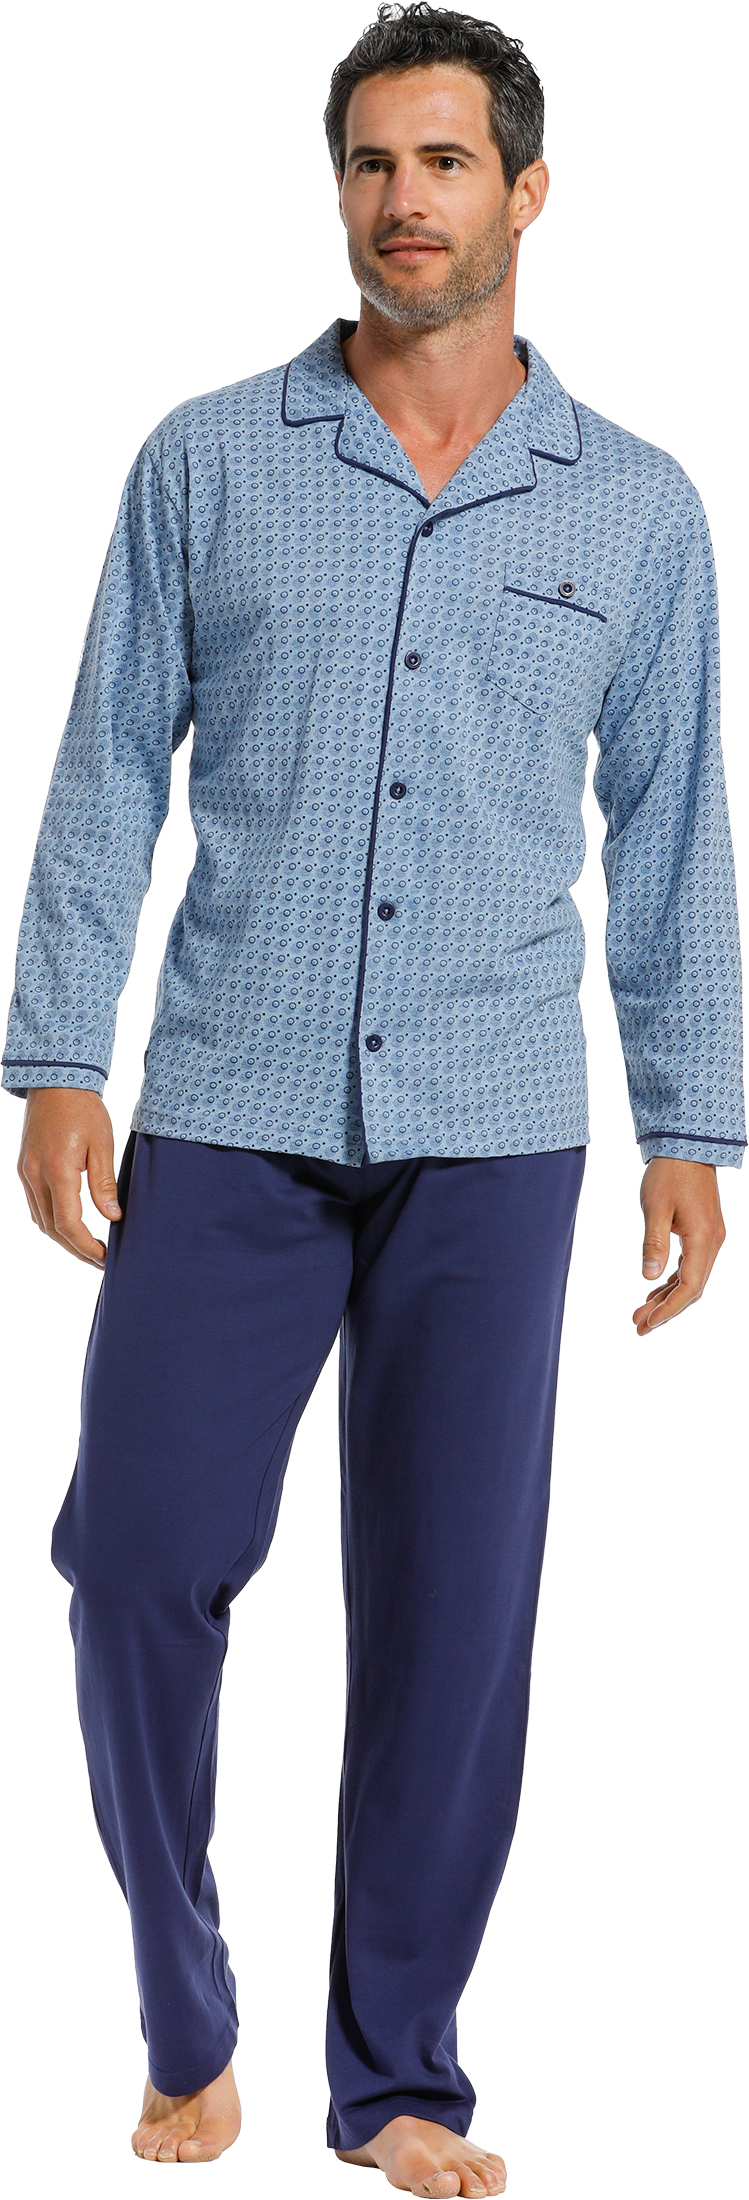 Heren doorknoop pyjama Pastunette 23211-614-6 - Blauw - XL/54